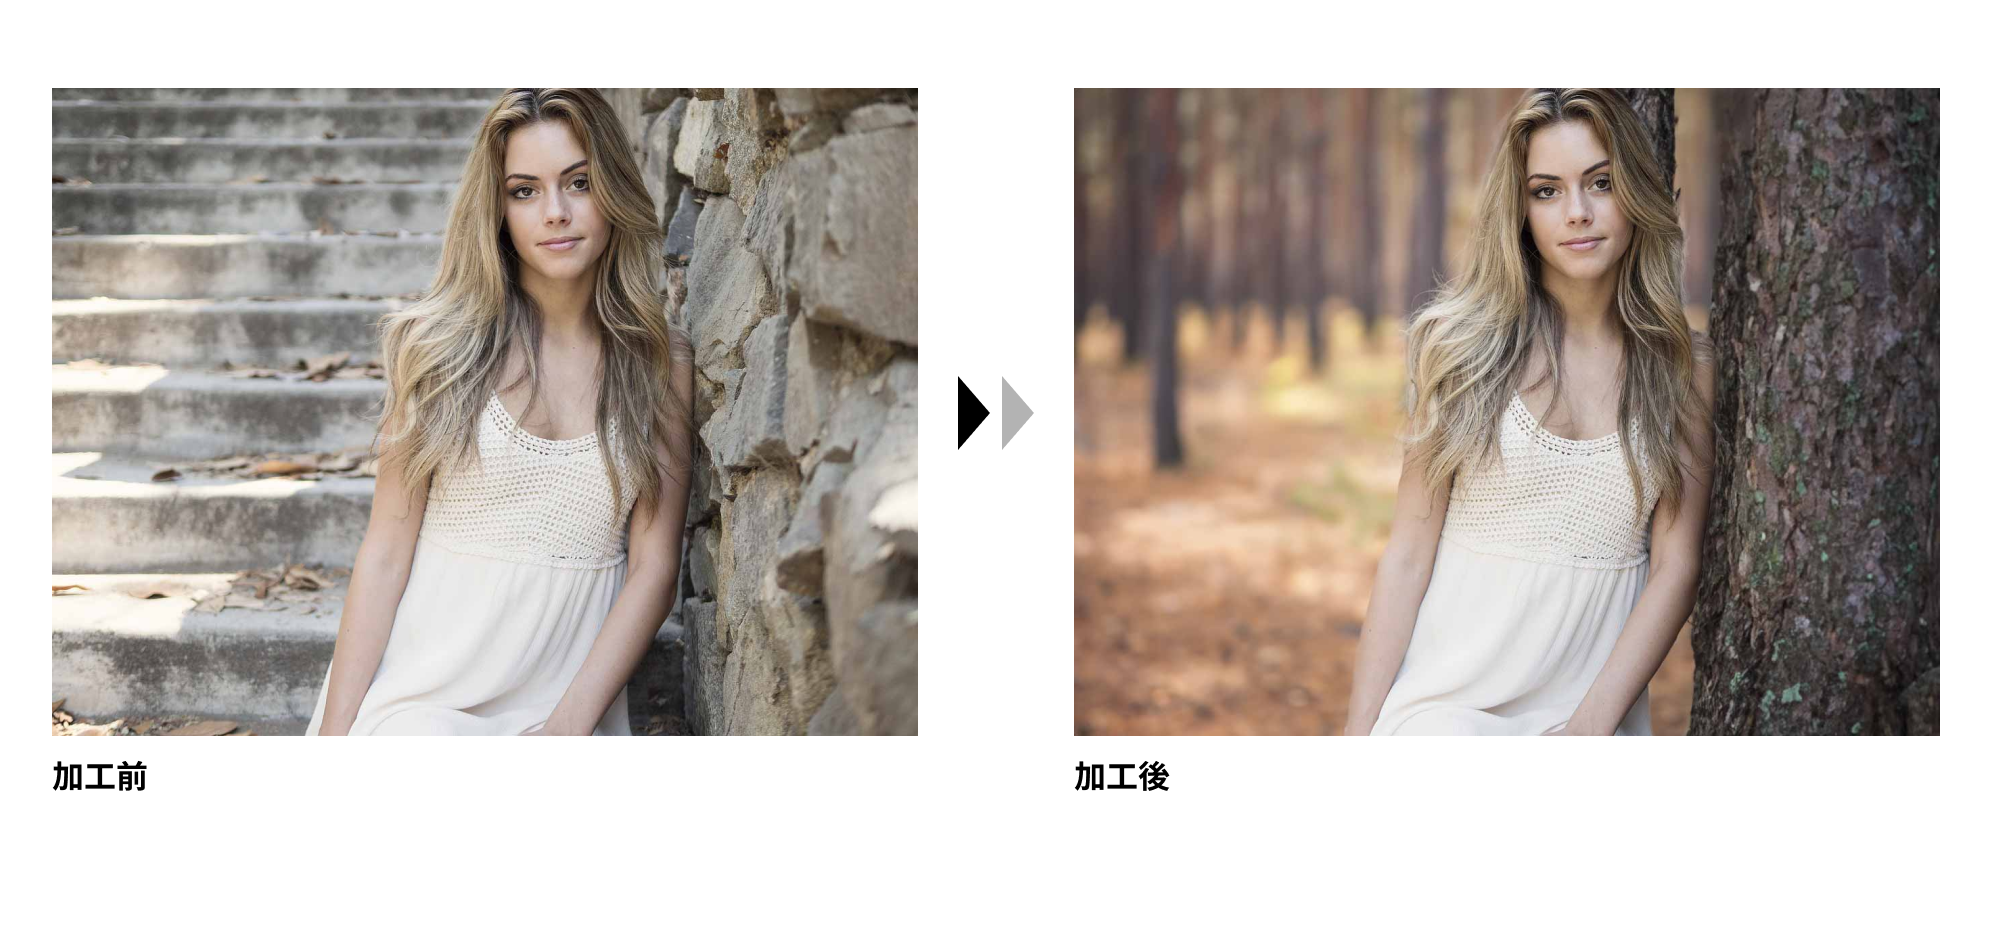 フォトショップの生成AI機能で、女性の背景を森に変えた写真